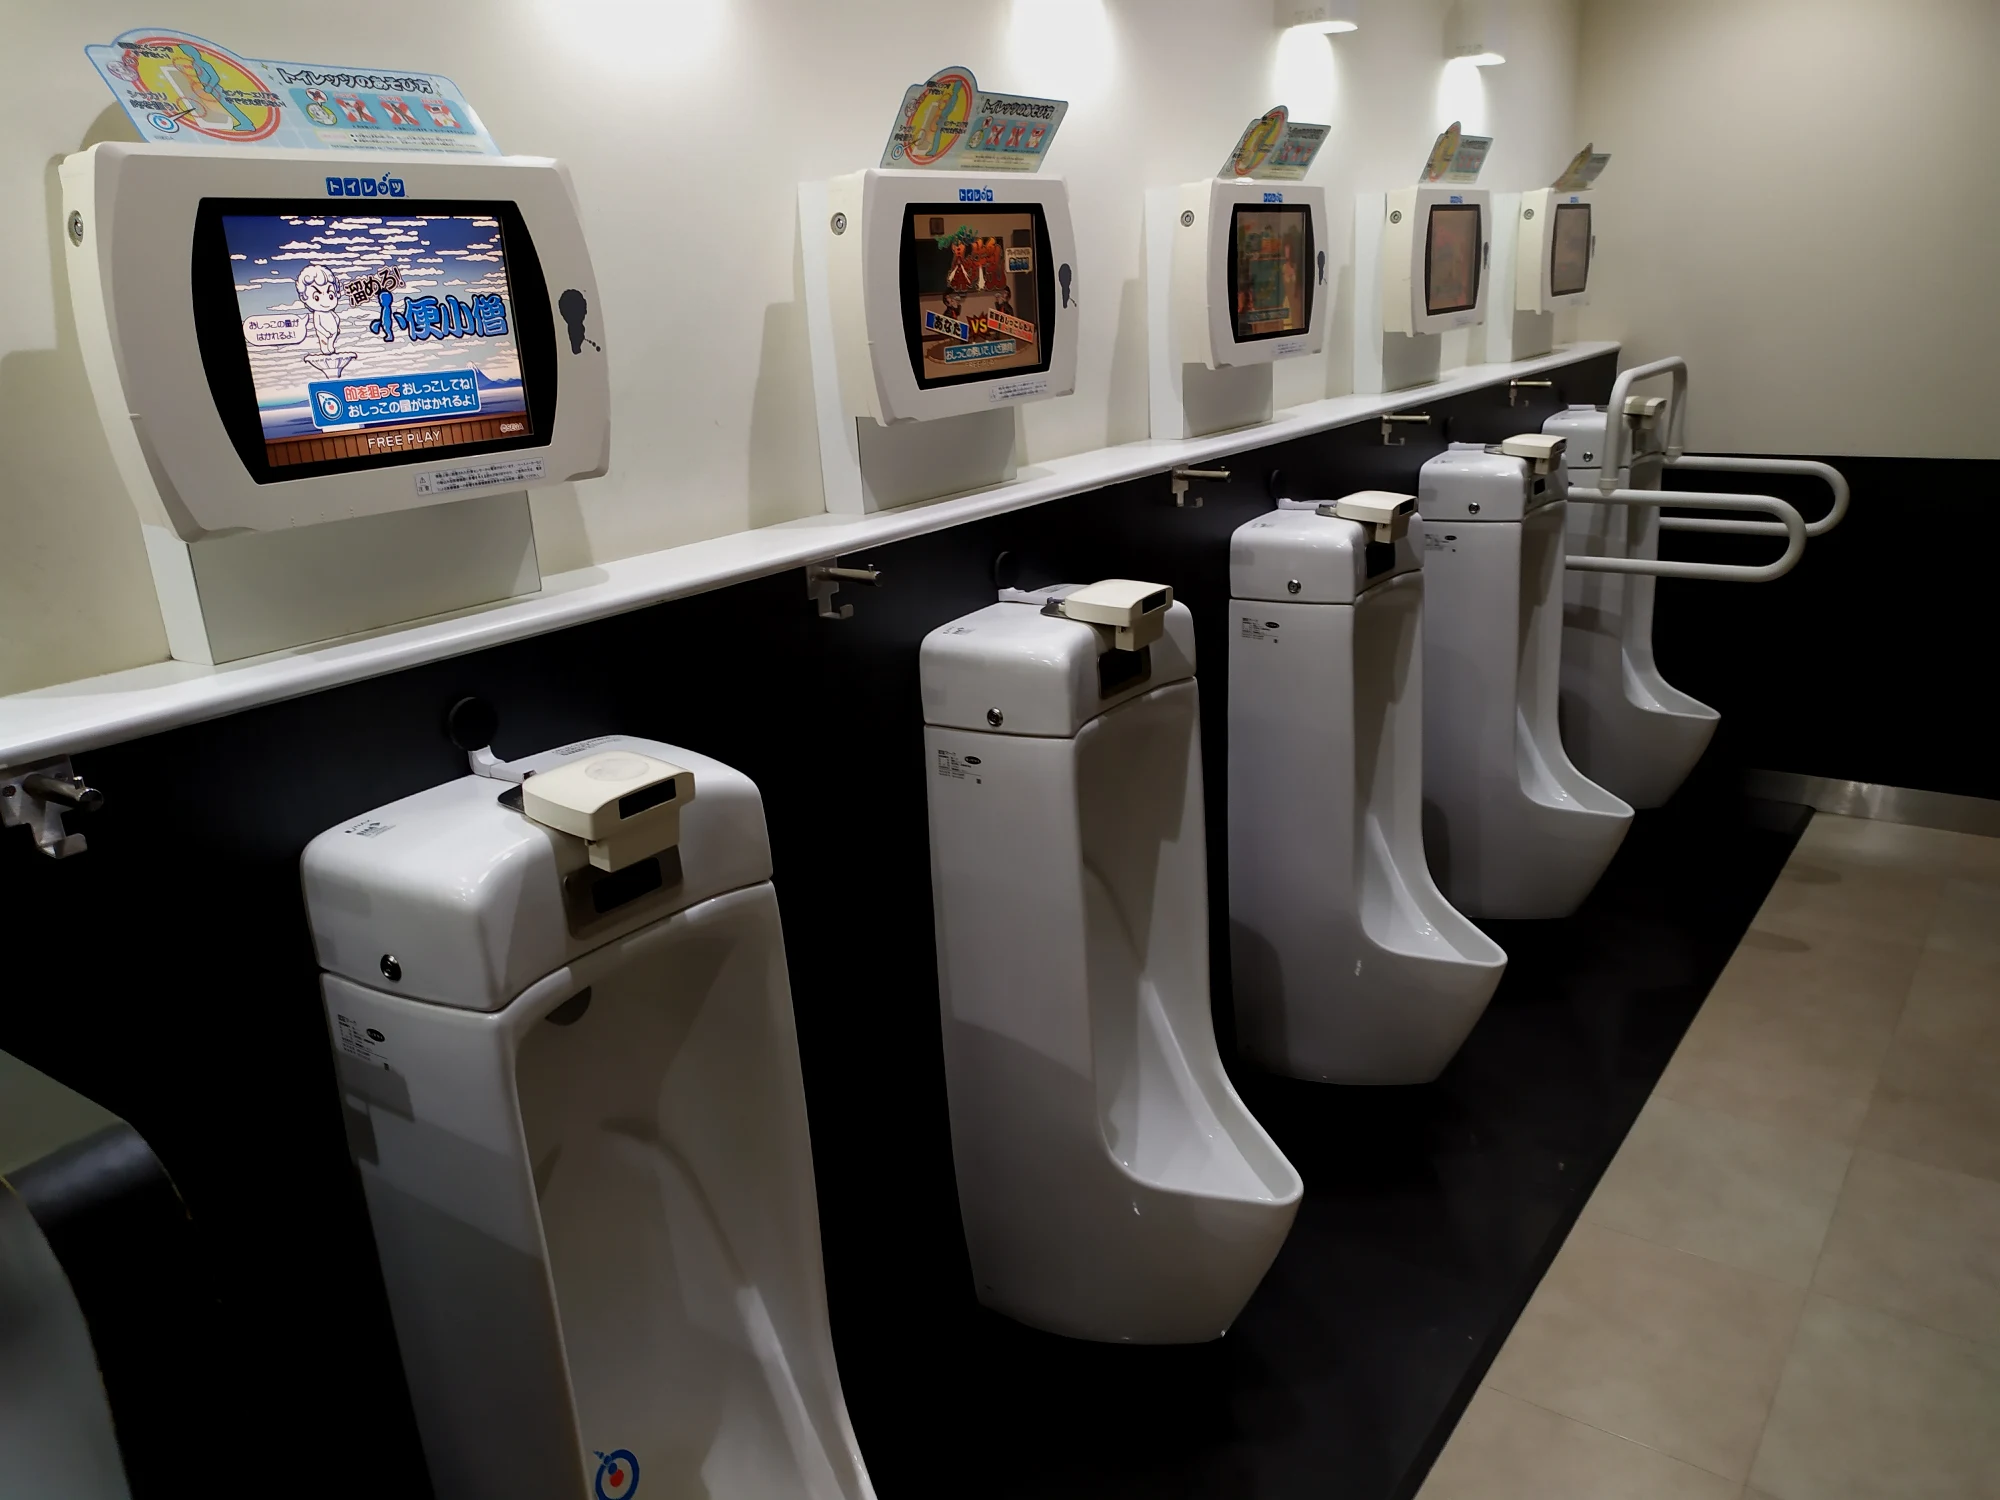 台场那边有些厕所连尿尿都是可以玩游戏的……一般就是要求你尿在特定的区域里，然后测强度和尿量什么的……